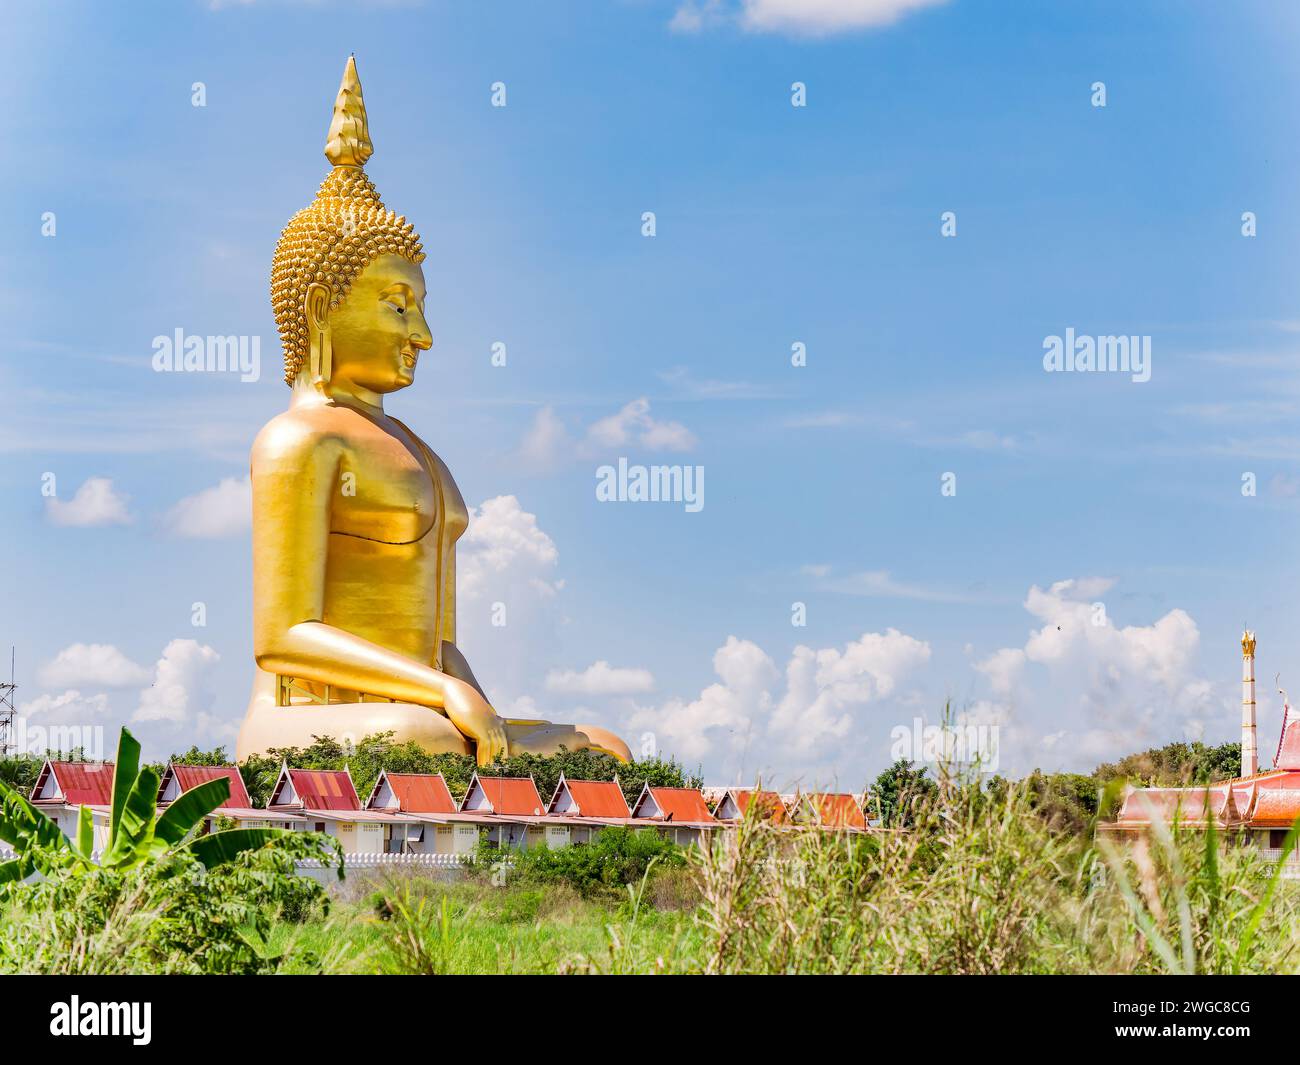 Il Buddha gigante a Wat Muang, Ang Thong, Thailandia. La statua è alta 92 metri ed è stata completata nel 2008 dopo un periodo di costruzione di 18 anni. Foto Stock